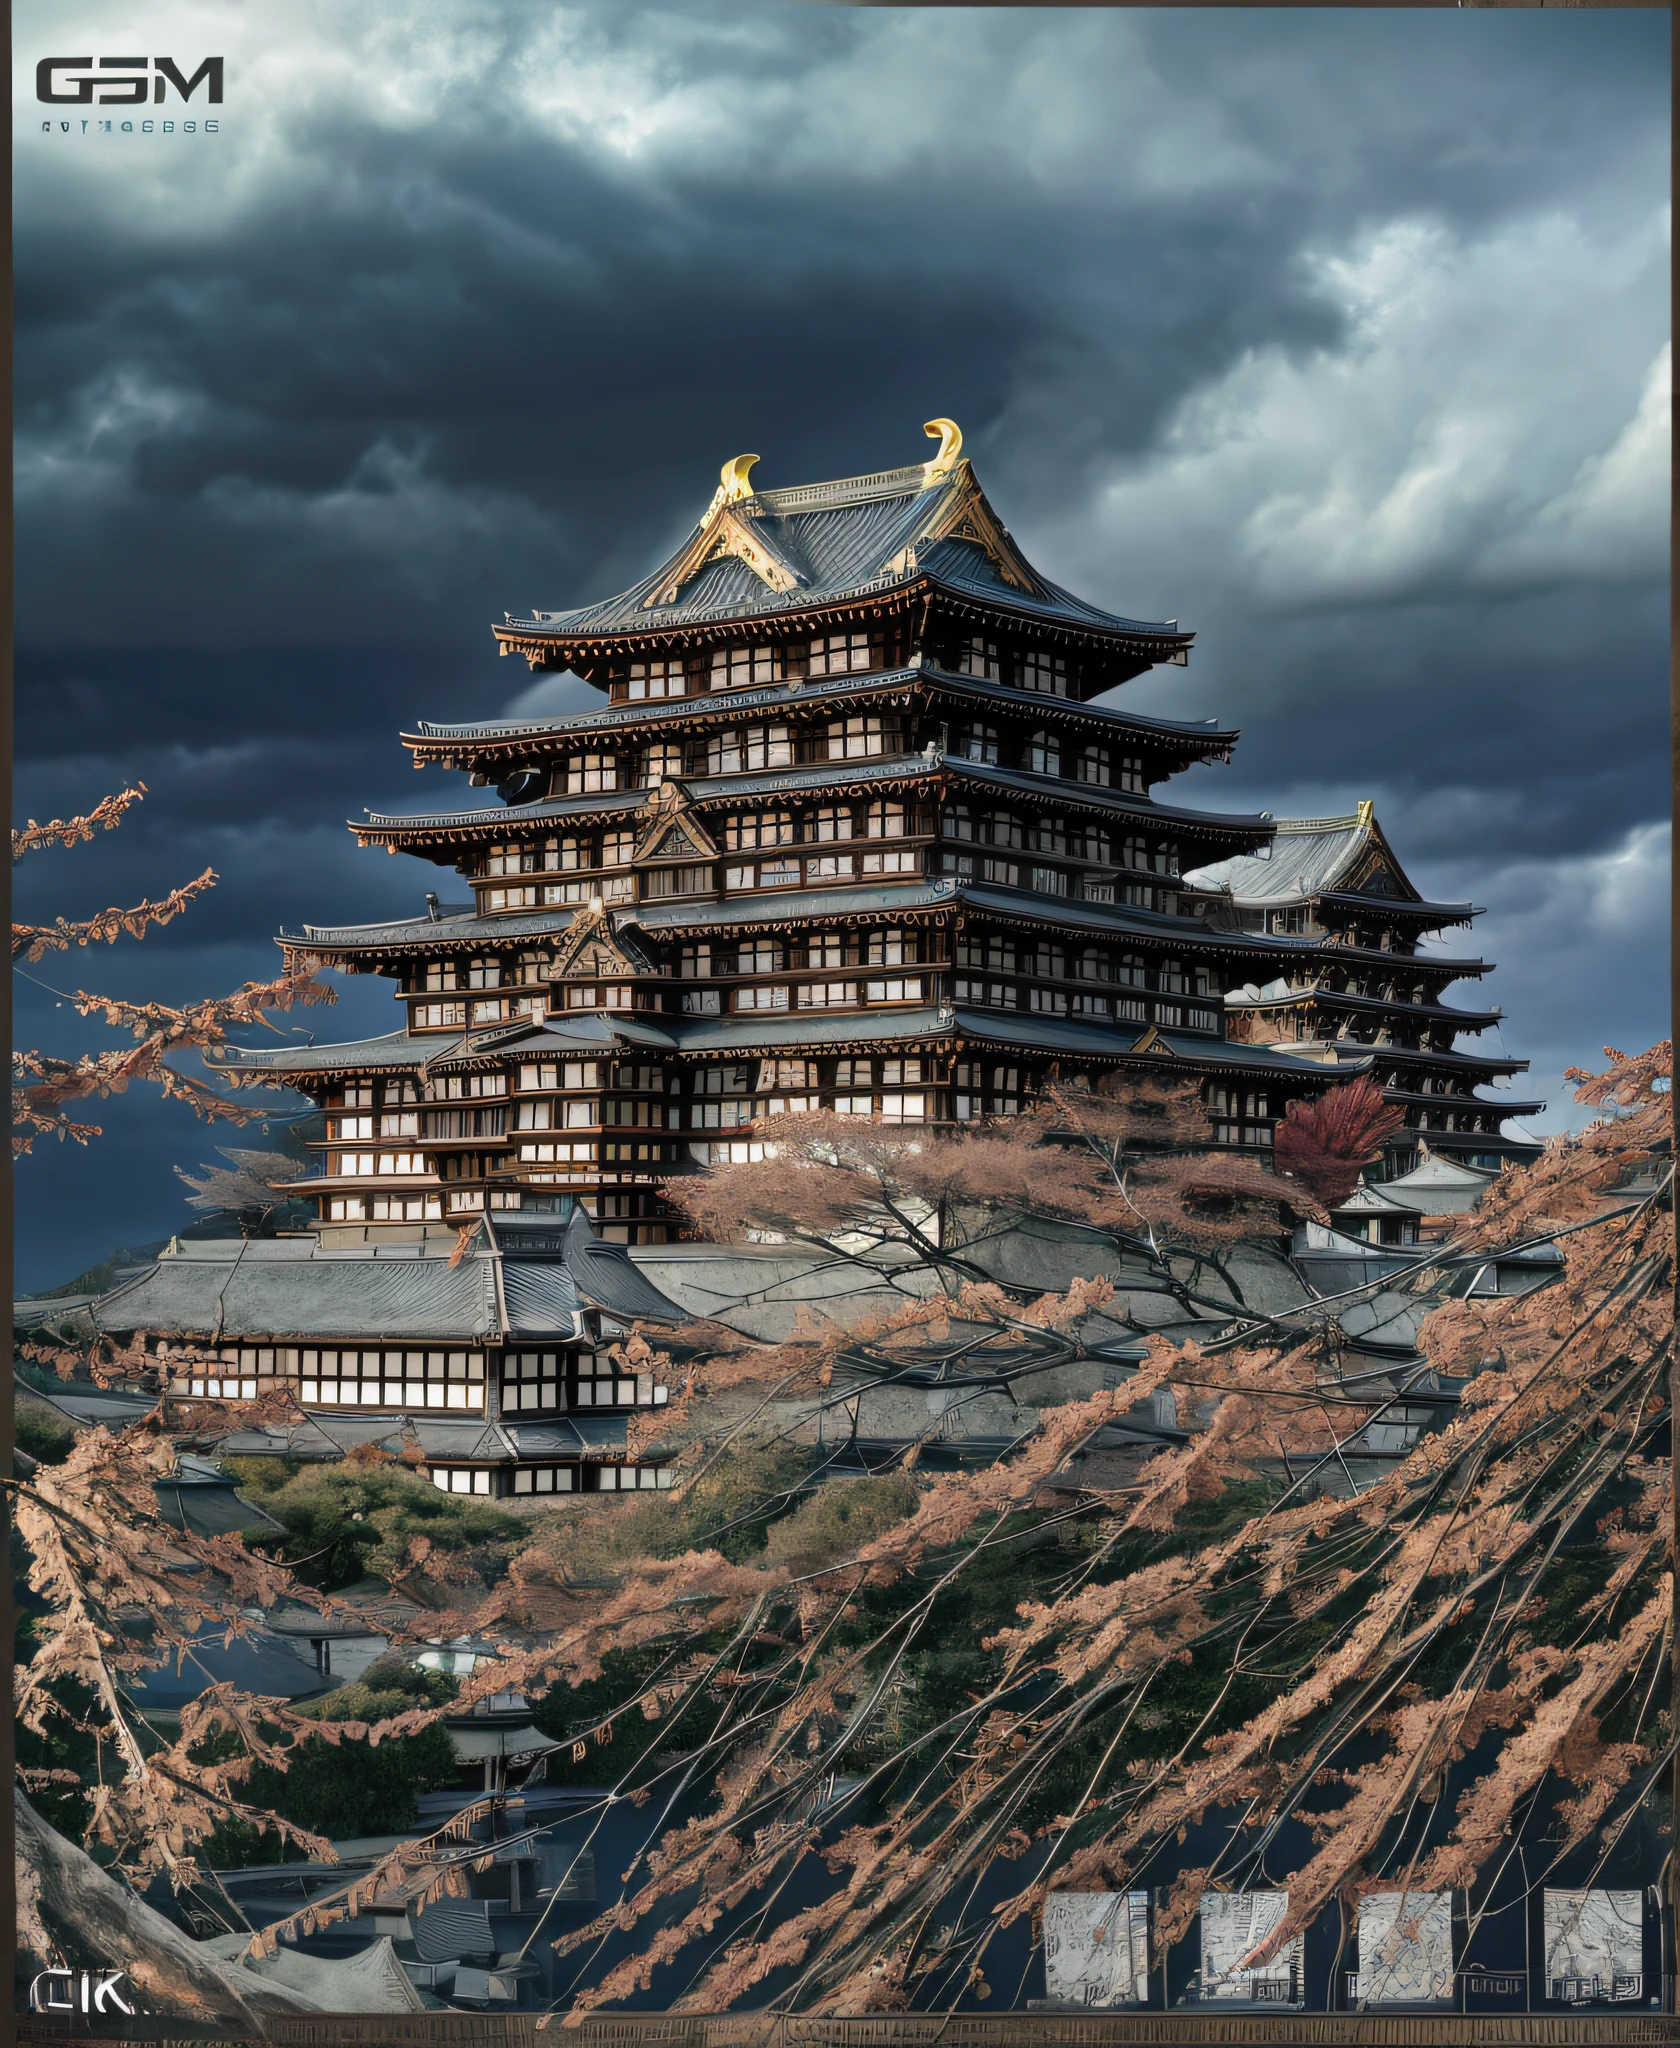 傑作、最高品質、高品質、非常に詳細な CG Unity 8K 壁紙、戦国時代　非常に詳細な、名古屋城、姫路城、熊本城、イーグレットシティ、または城、日本城、家の外、スカイスカイ、雲、夜、ヒューマノントはありません、日本語, 月明かり, シネマグラフ, 風景, 水, 木, 暗い空, 落ちる, 崖, 自然な, 湖, 川, 曇りの灰色の空, 受賞写真, ボケ 被写界深度, 被写界深度, んふふ, 咲く, 色収差, フォトリアリスティック, 非常に詳細な, アートステーションでトレンド, CGsociety トレンド、複雑で、詳細に、ドラマチックで、